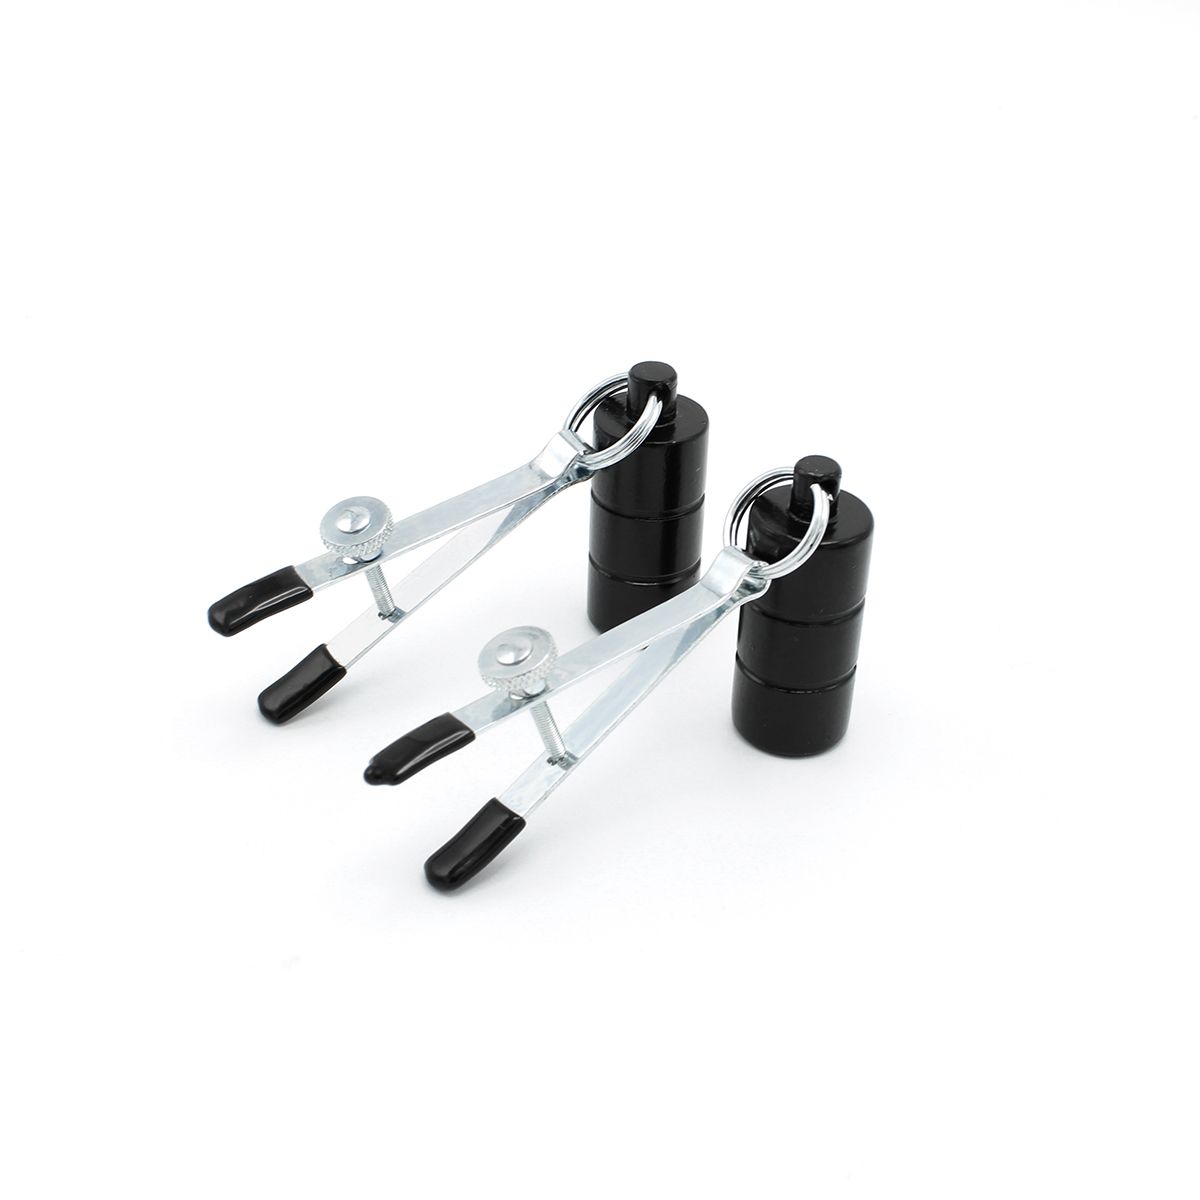 Kiotos Steel - Tepelklemmen - Nipple Adjustable Pinch Clamps 2x100g Gewichten - RVS - Zwart-Erotiekvoordeel.nl